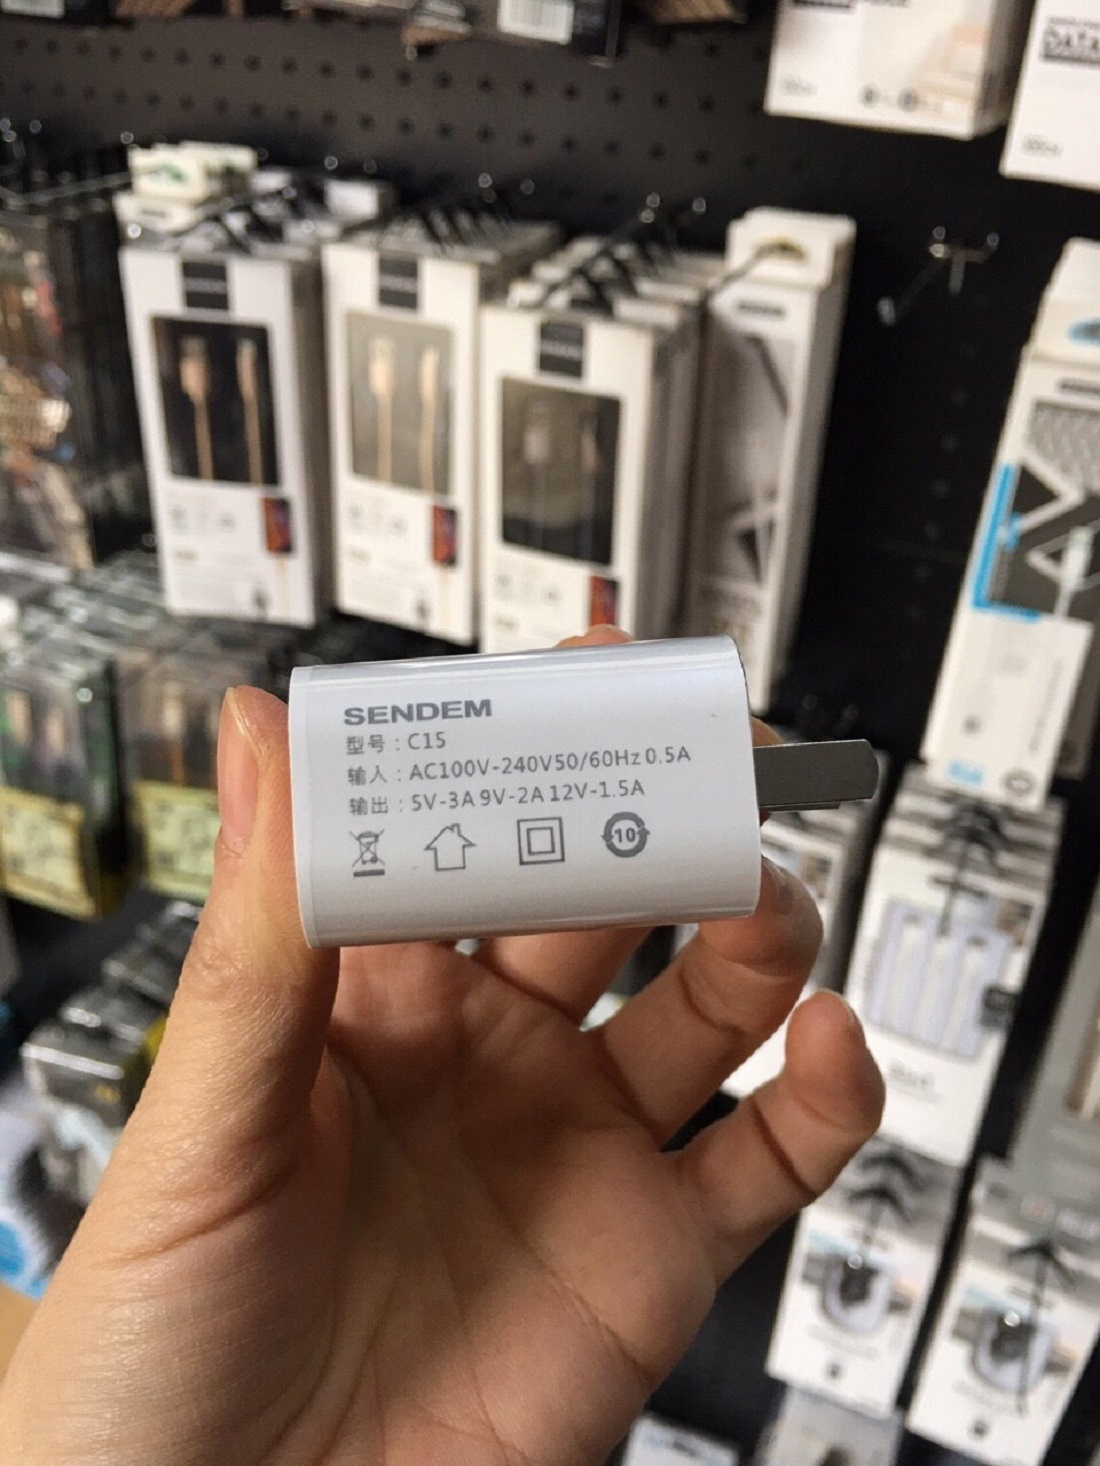 Củ sạc nhanh 18W SENDEM C15 cổng USB Type C hỗ trợ PD Super Chager cho điện thoại iPhone 11, iPhone 11 Pro, iPhone 11 Pro Max, iPad, Macbook - Hàng chính hãng